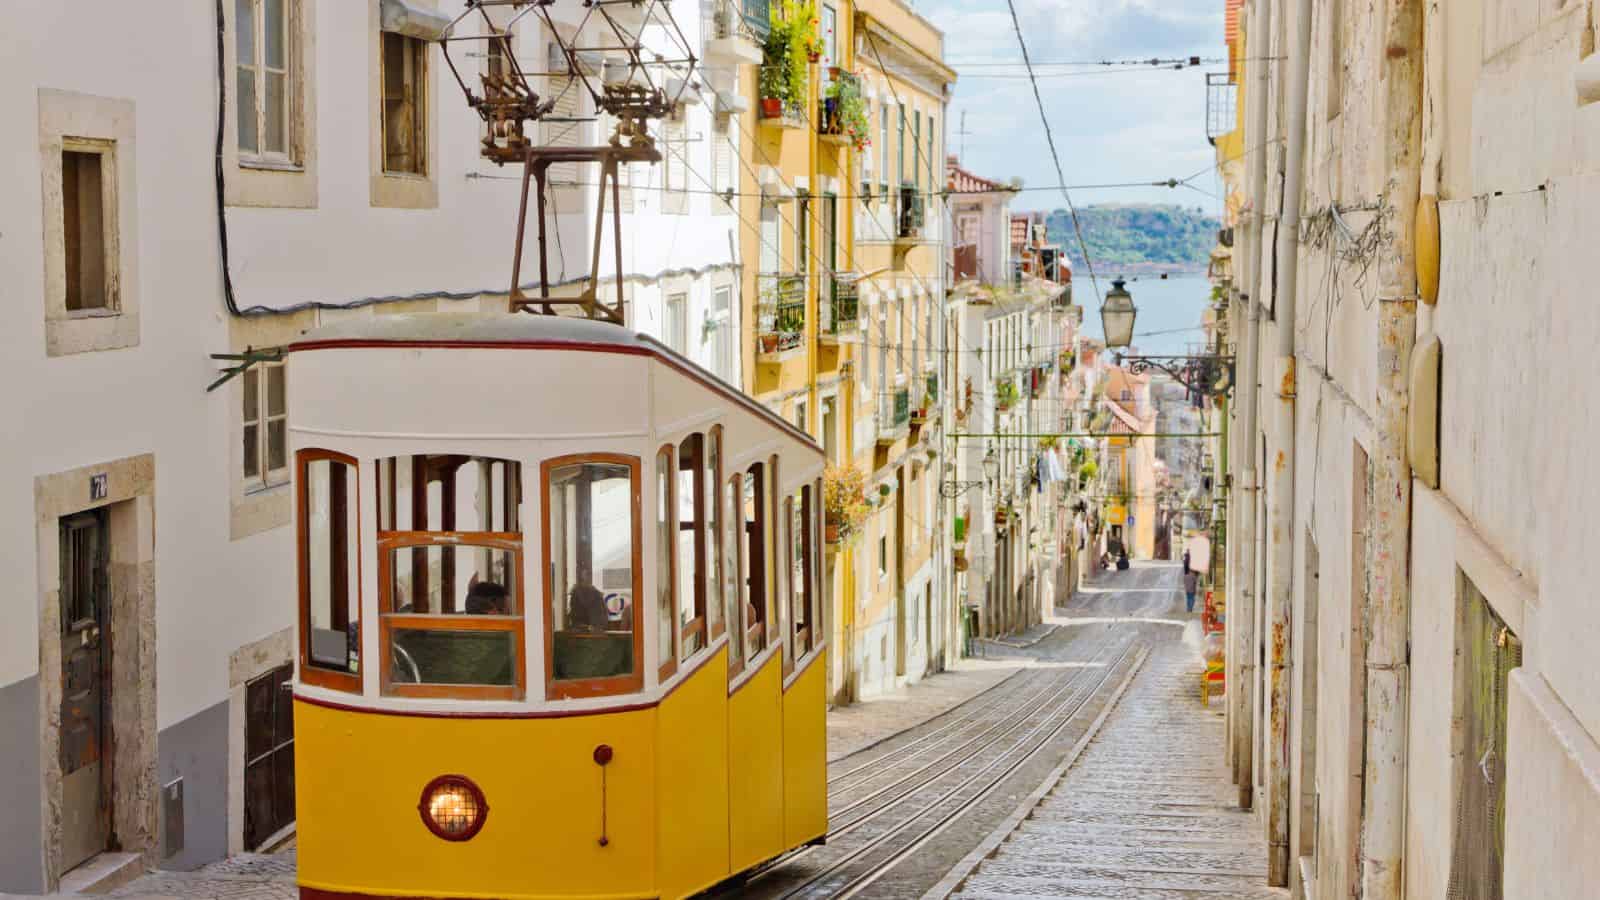 Trolley in Lisbon Portugal